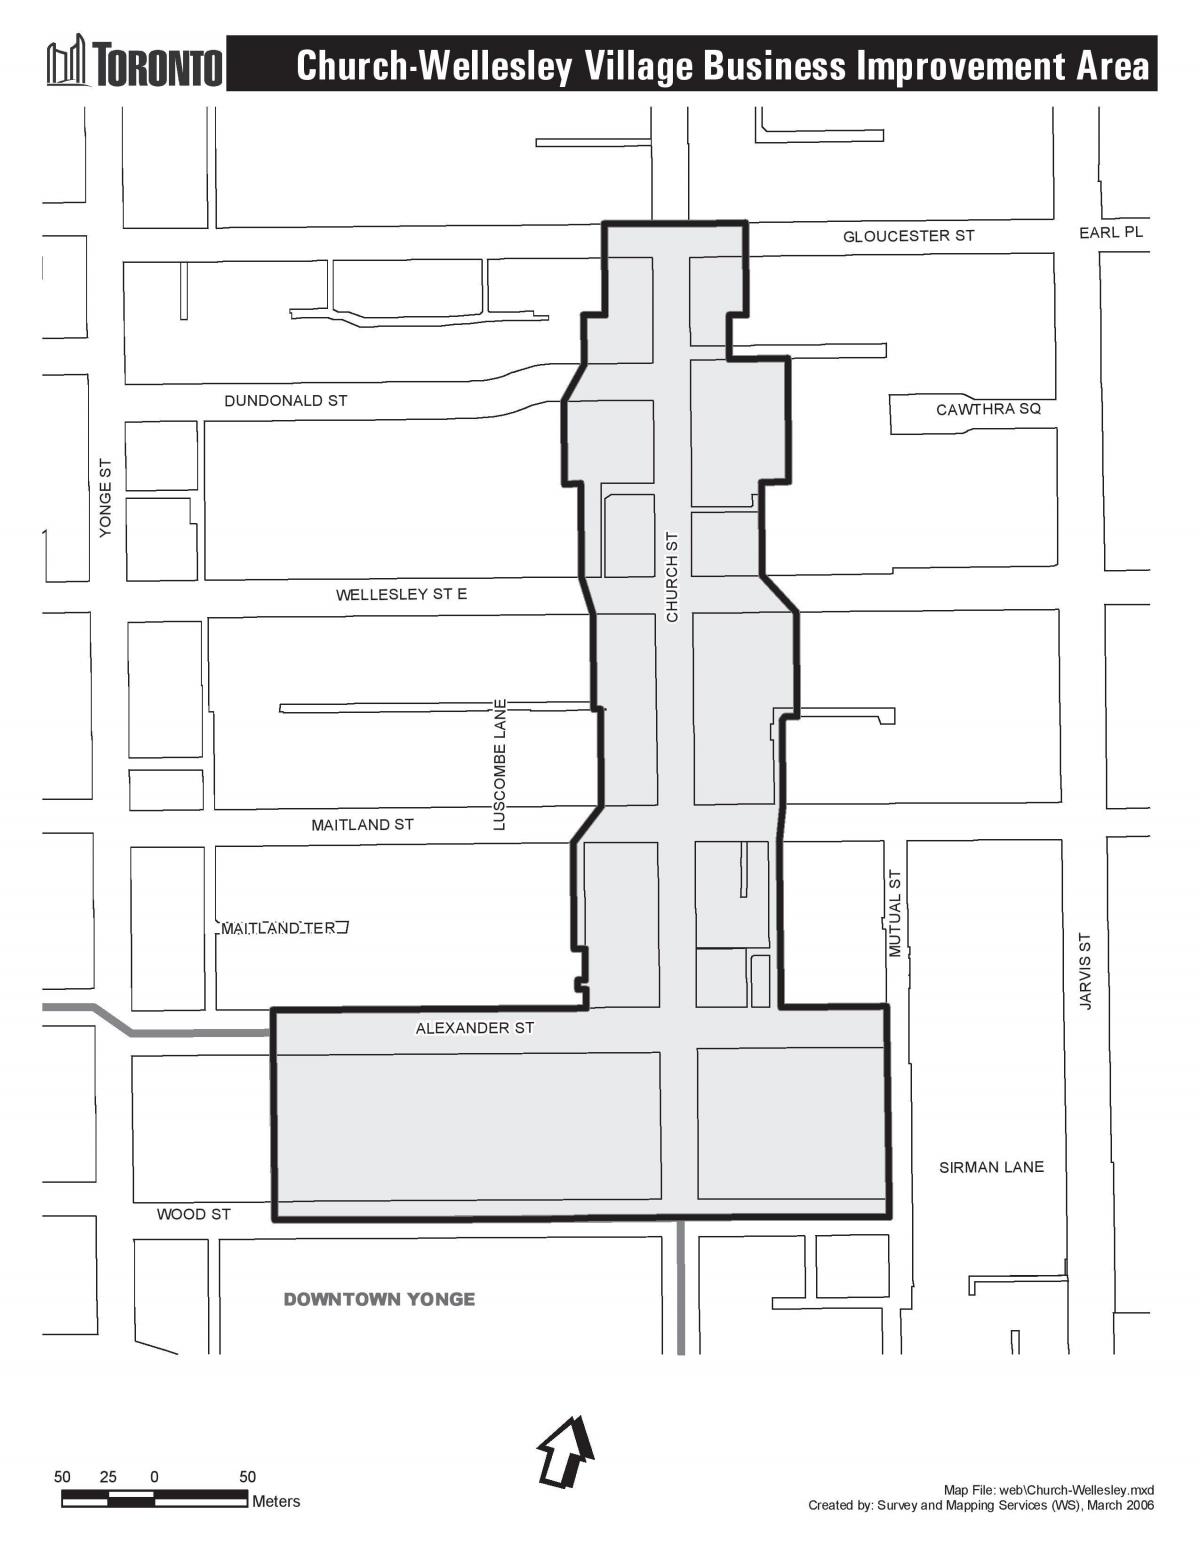 Карта Церковь-Уэлсли деревня совершенствования бизнес-Торонто